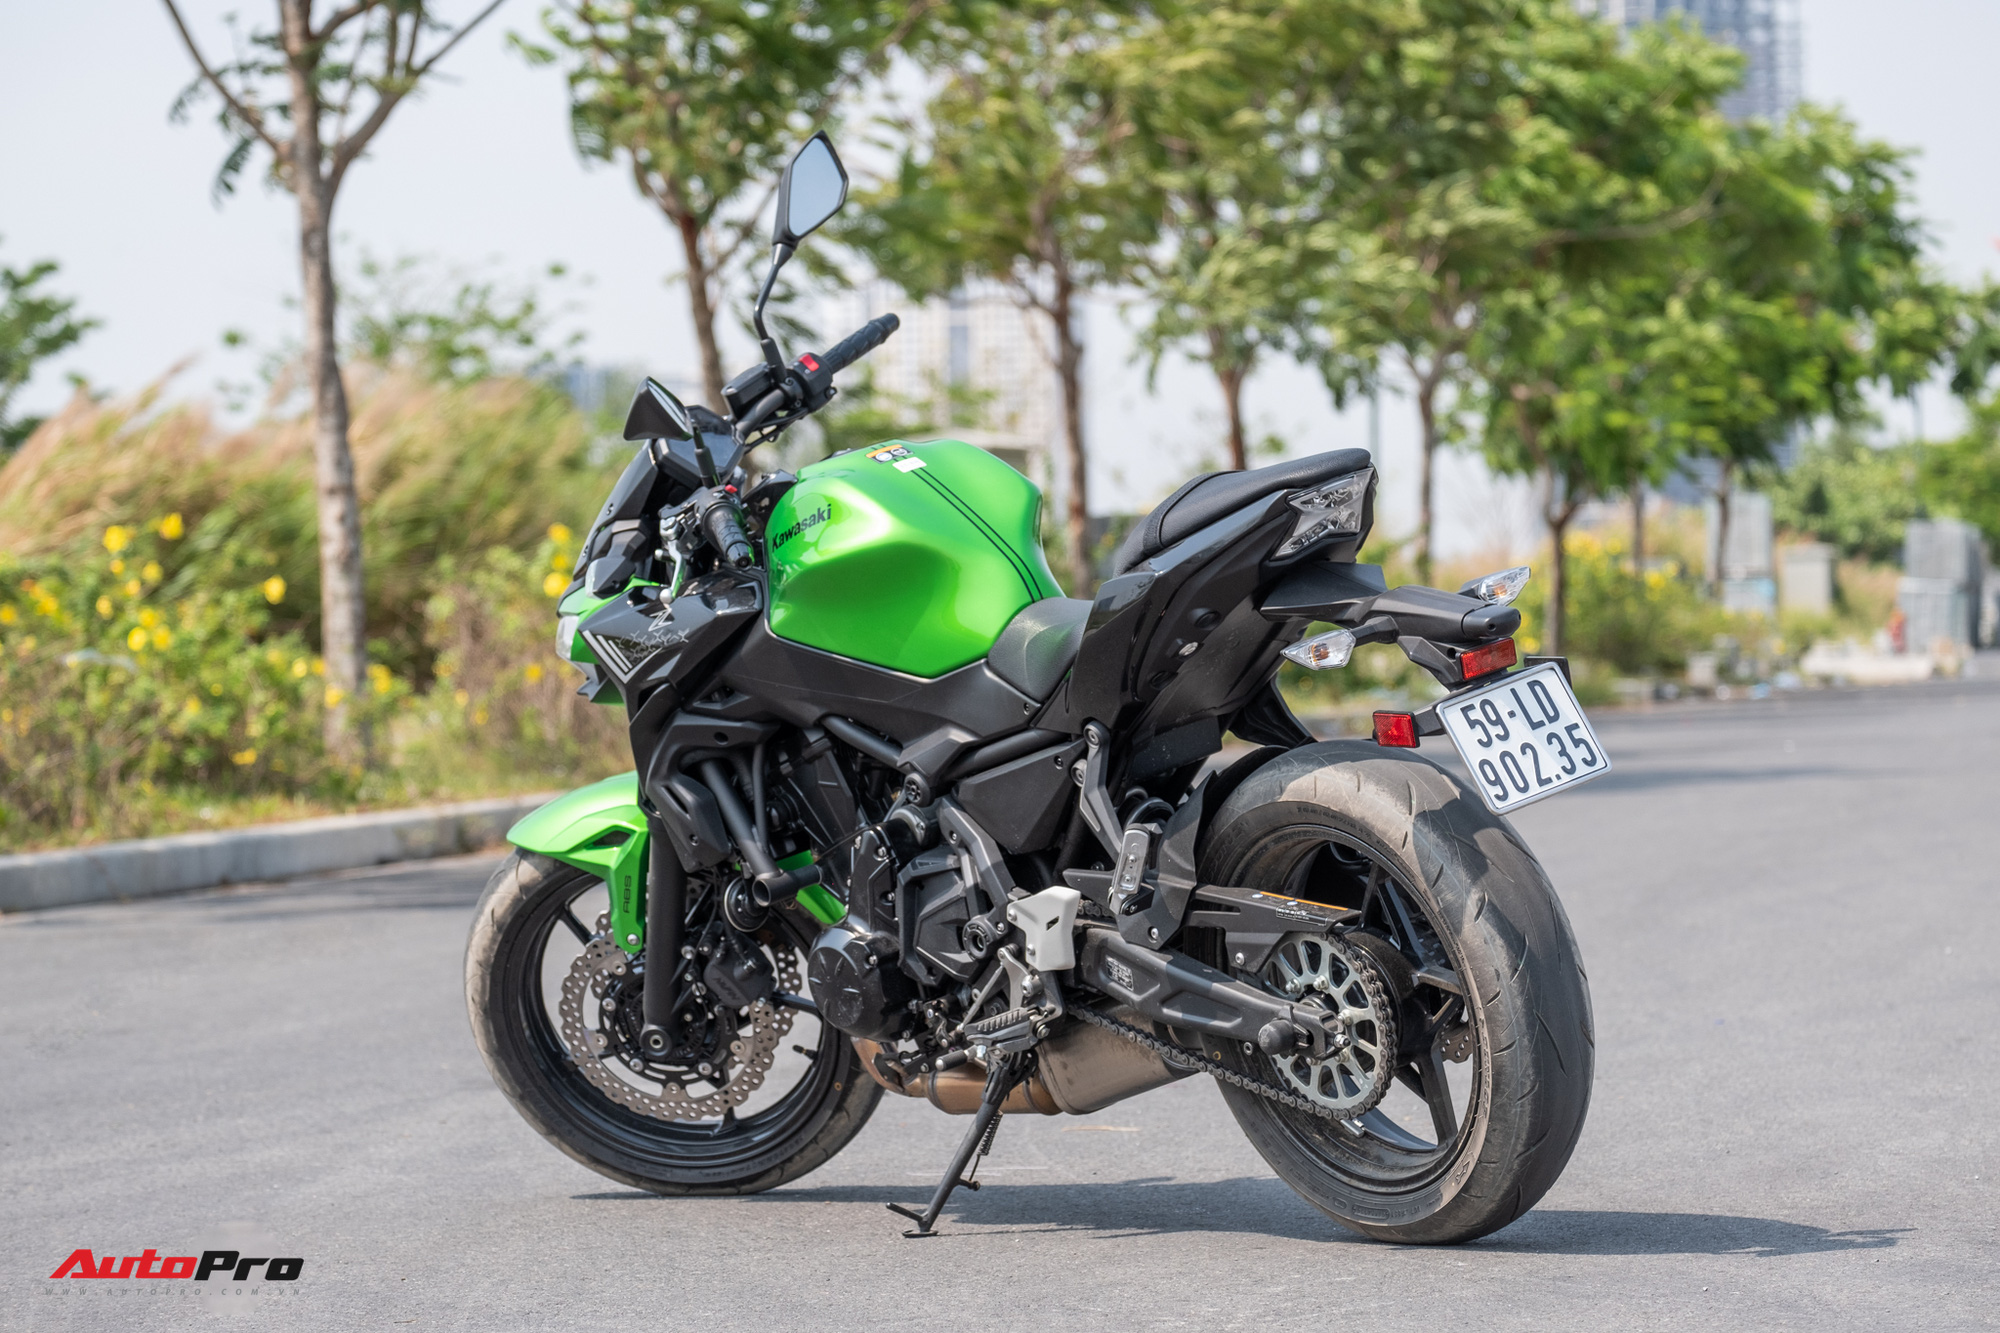 Đánh giá Kawasaki Z650: Naked bike cỡ trung đạt tiêu chí Ngon, bổ, nhưng tạm rẻ - Ảnh 7.